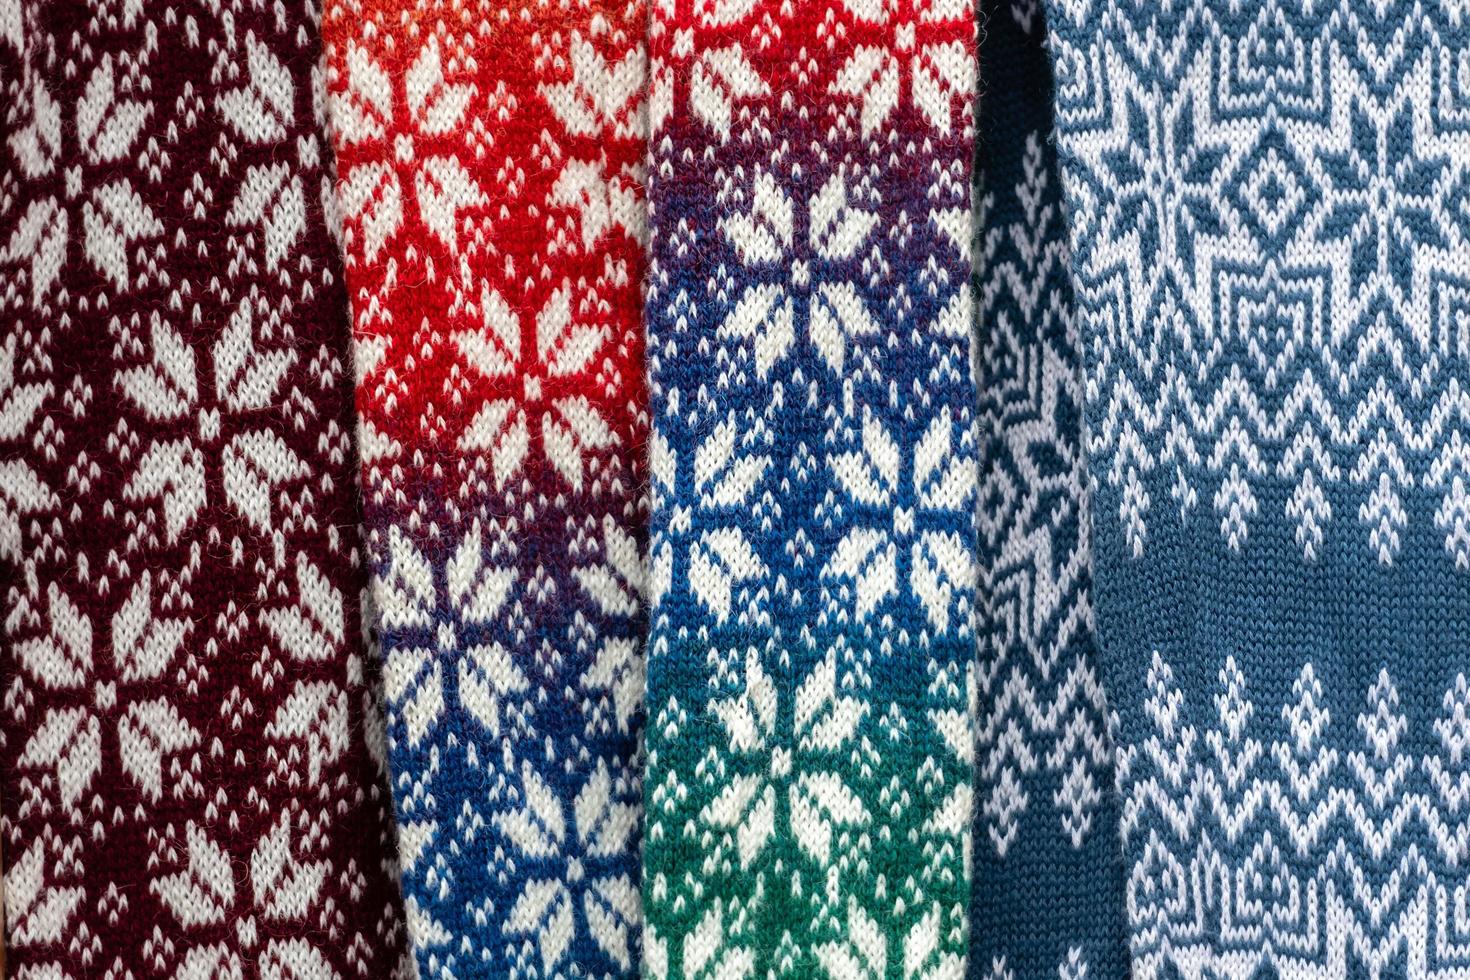 Les ceintures lettones traditionnelles sont des ceintures fabriquées avec du fil, des objets précieux, une variété de couleurs, différentes dans les régions lettones. ils sont présents dans les festivités et les occasions familiales. Lettonie photo